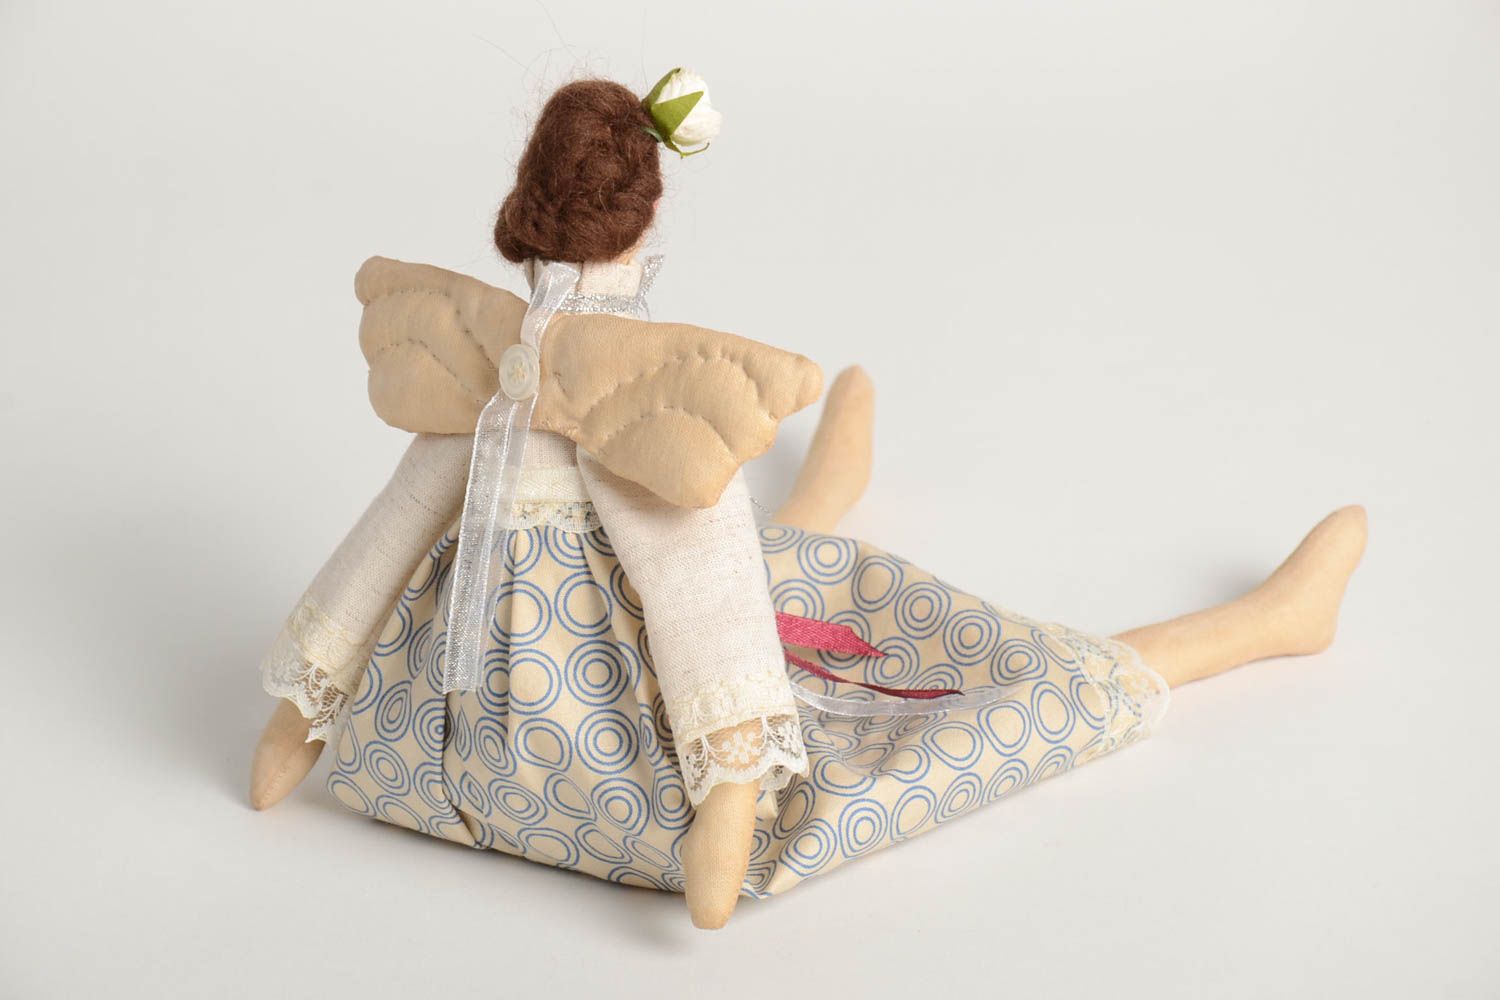 Кукла ручной работы кукла из ткани мягкая кукла Ангел очень оригинальный  фото 4